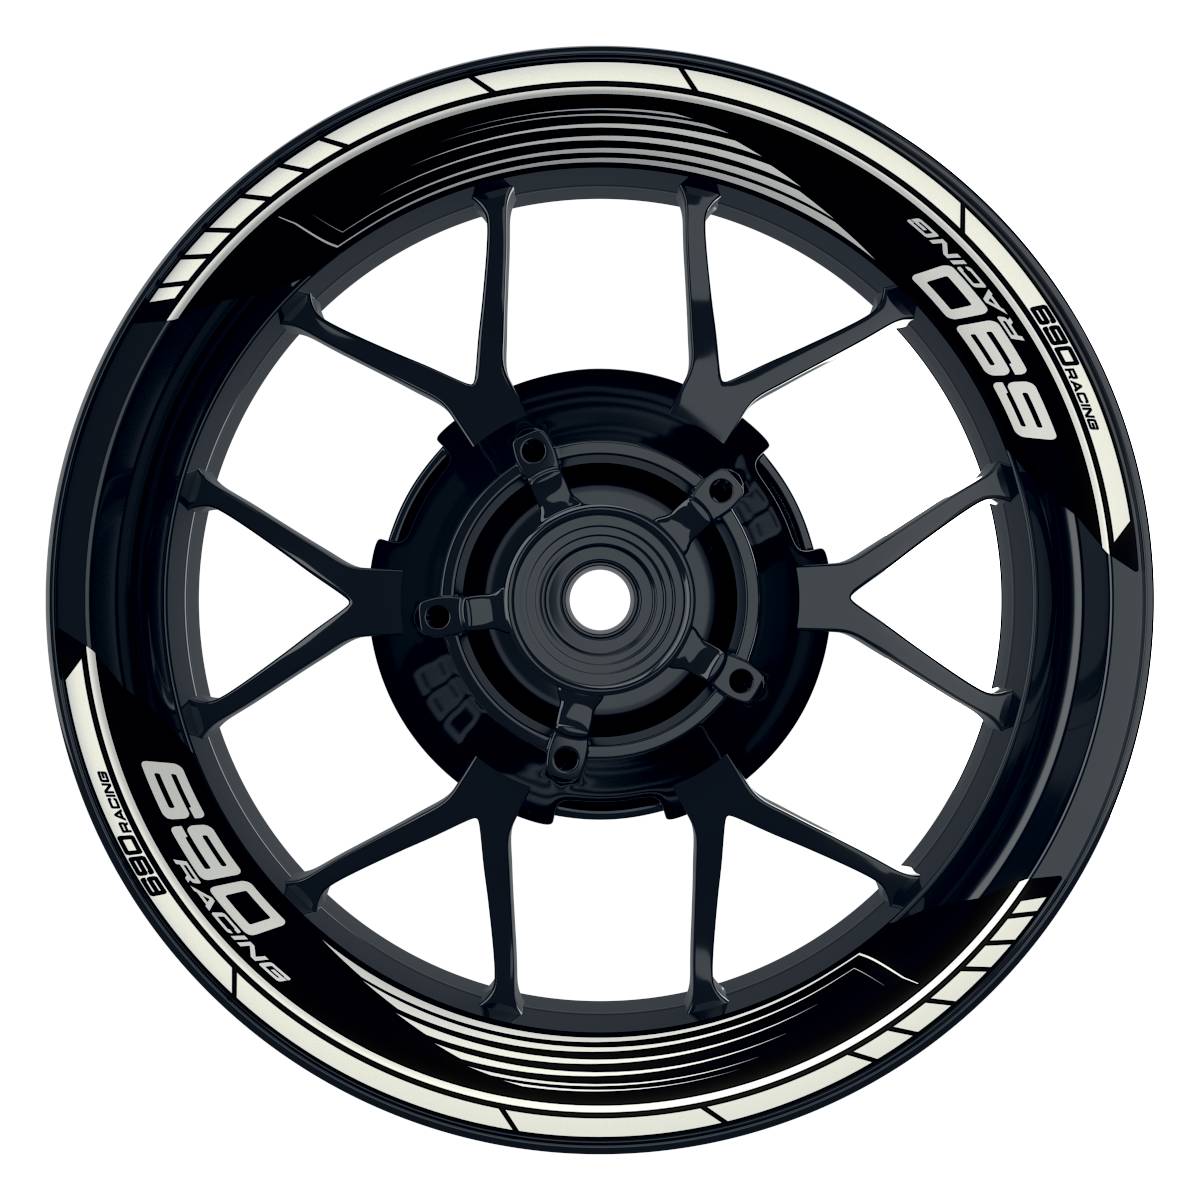 KTM Racing 690 SAW schwarz weiss Frontansicht